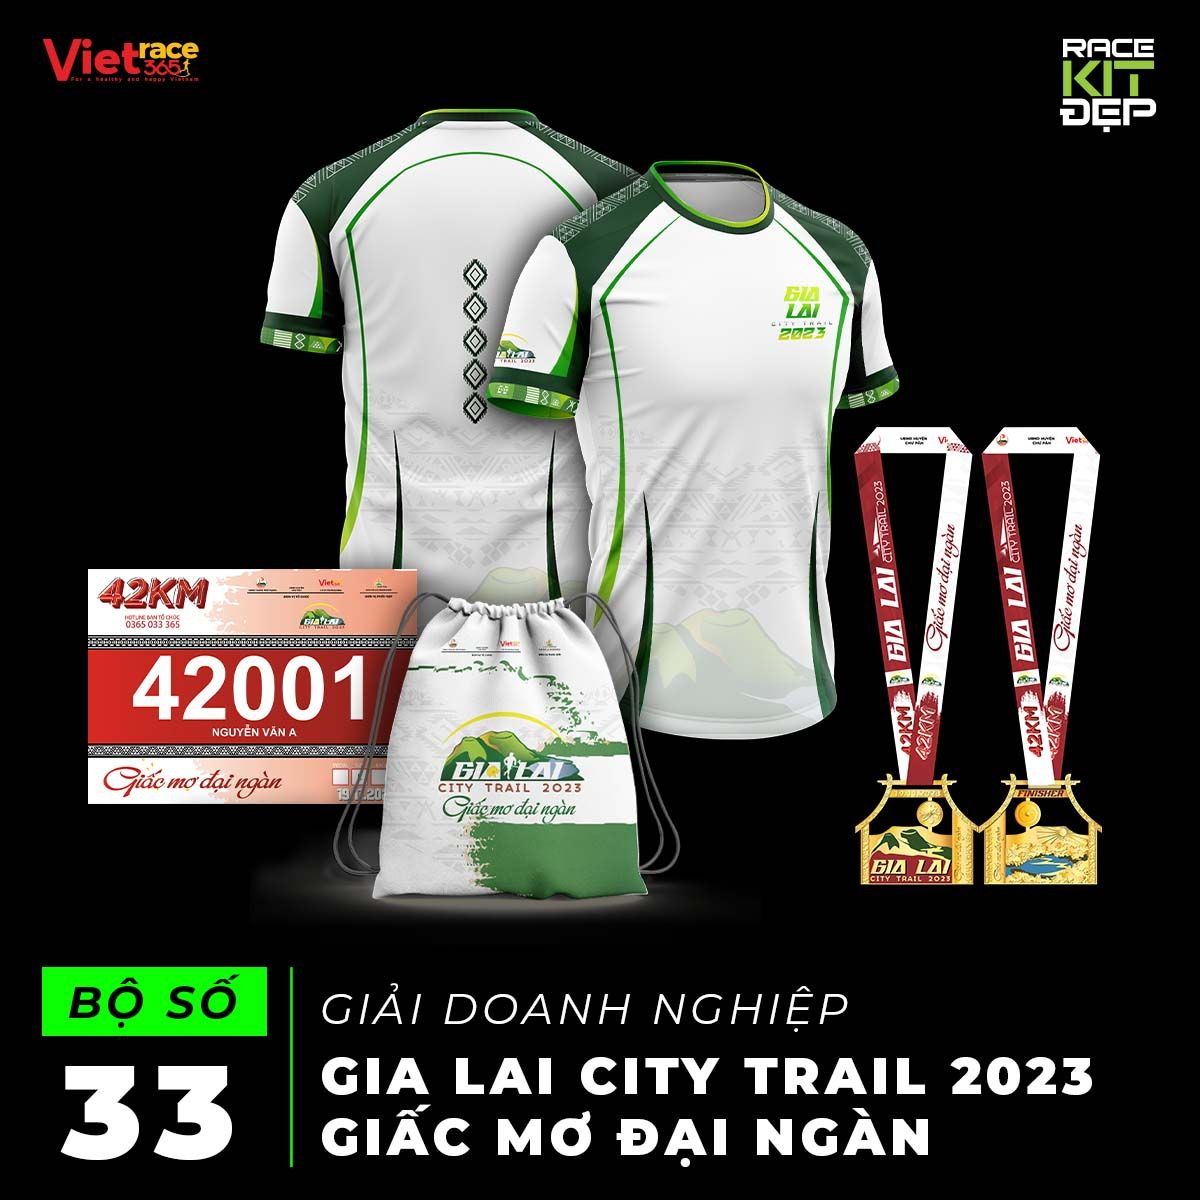 Gia Lai City Trail 2023